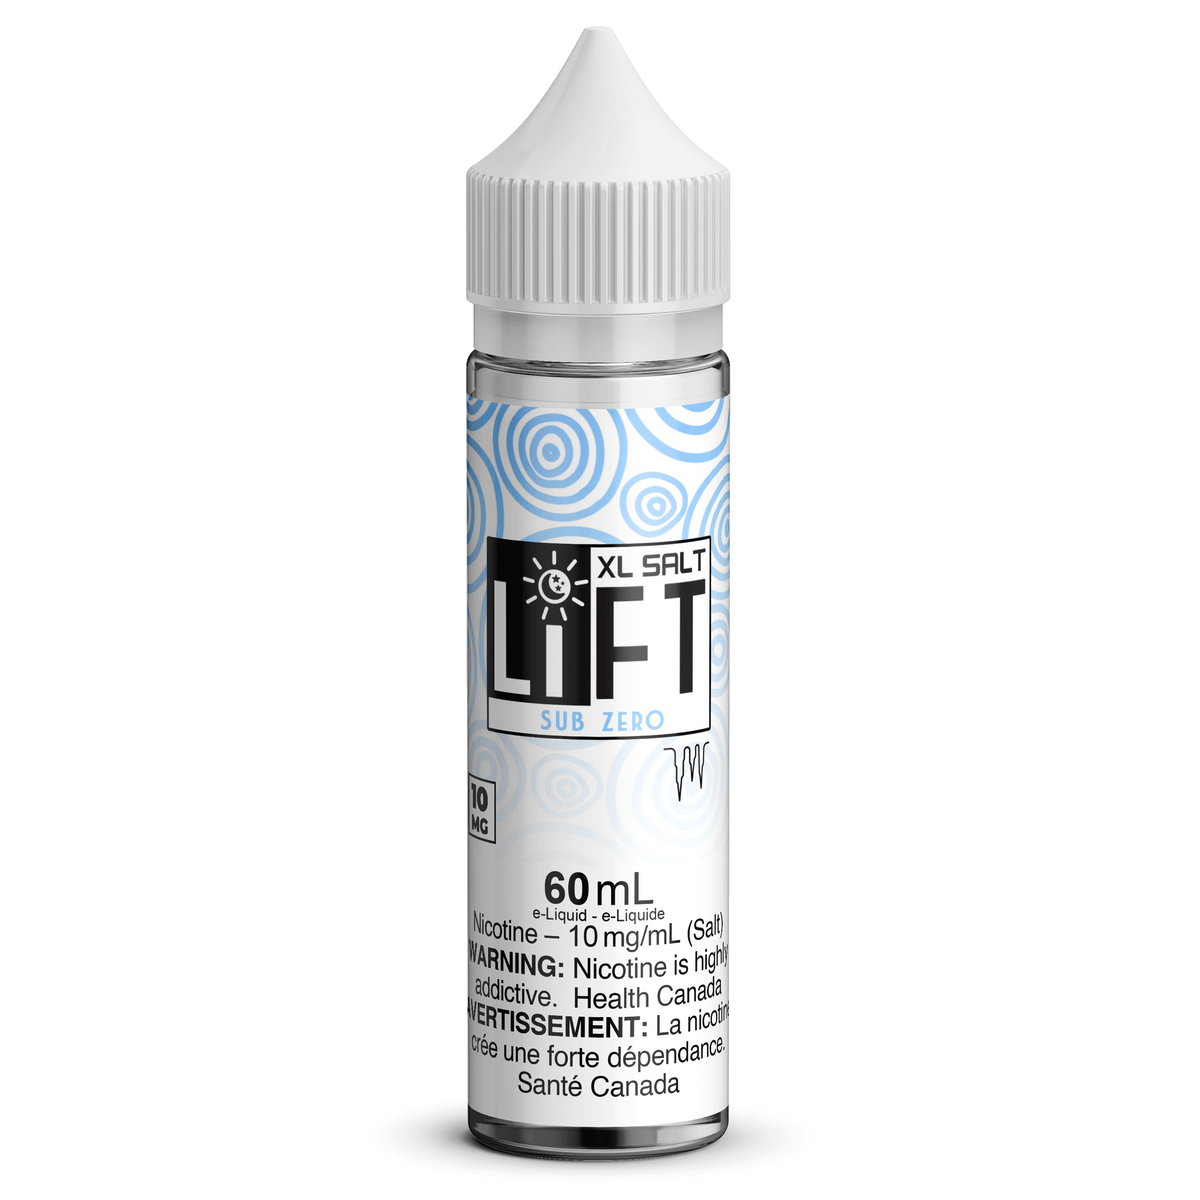 LIFT XL SALT - Sub Zero available on Canada online vape shop